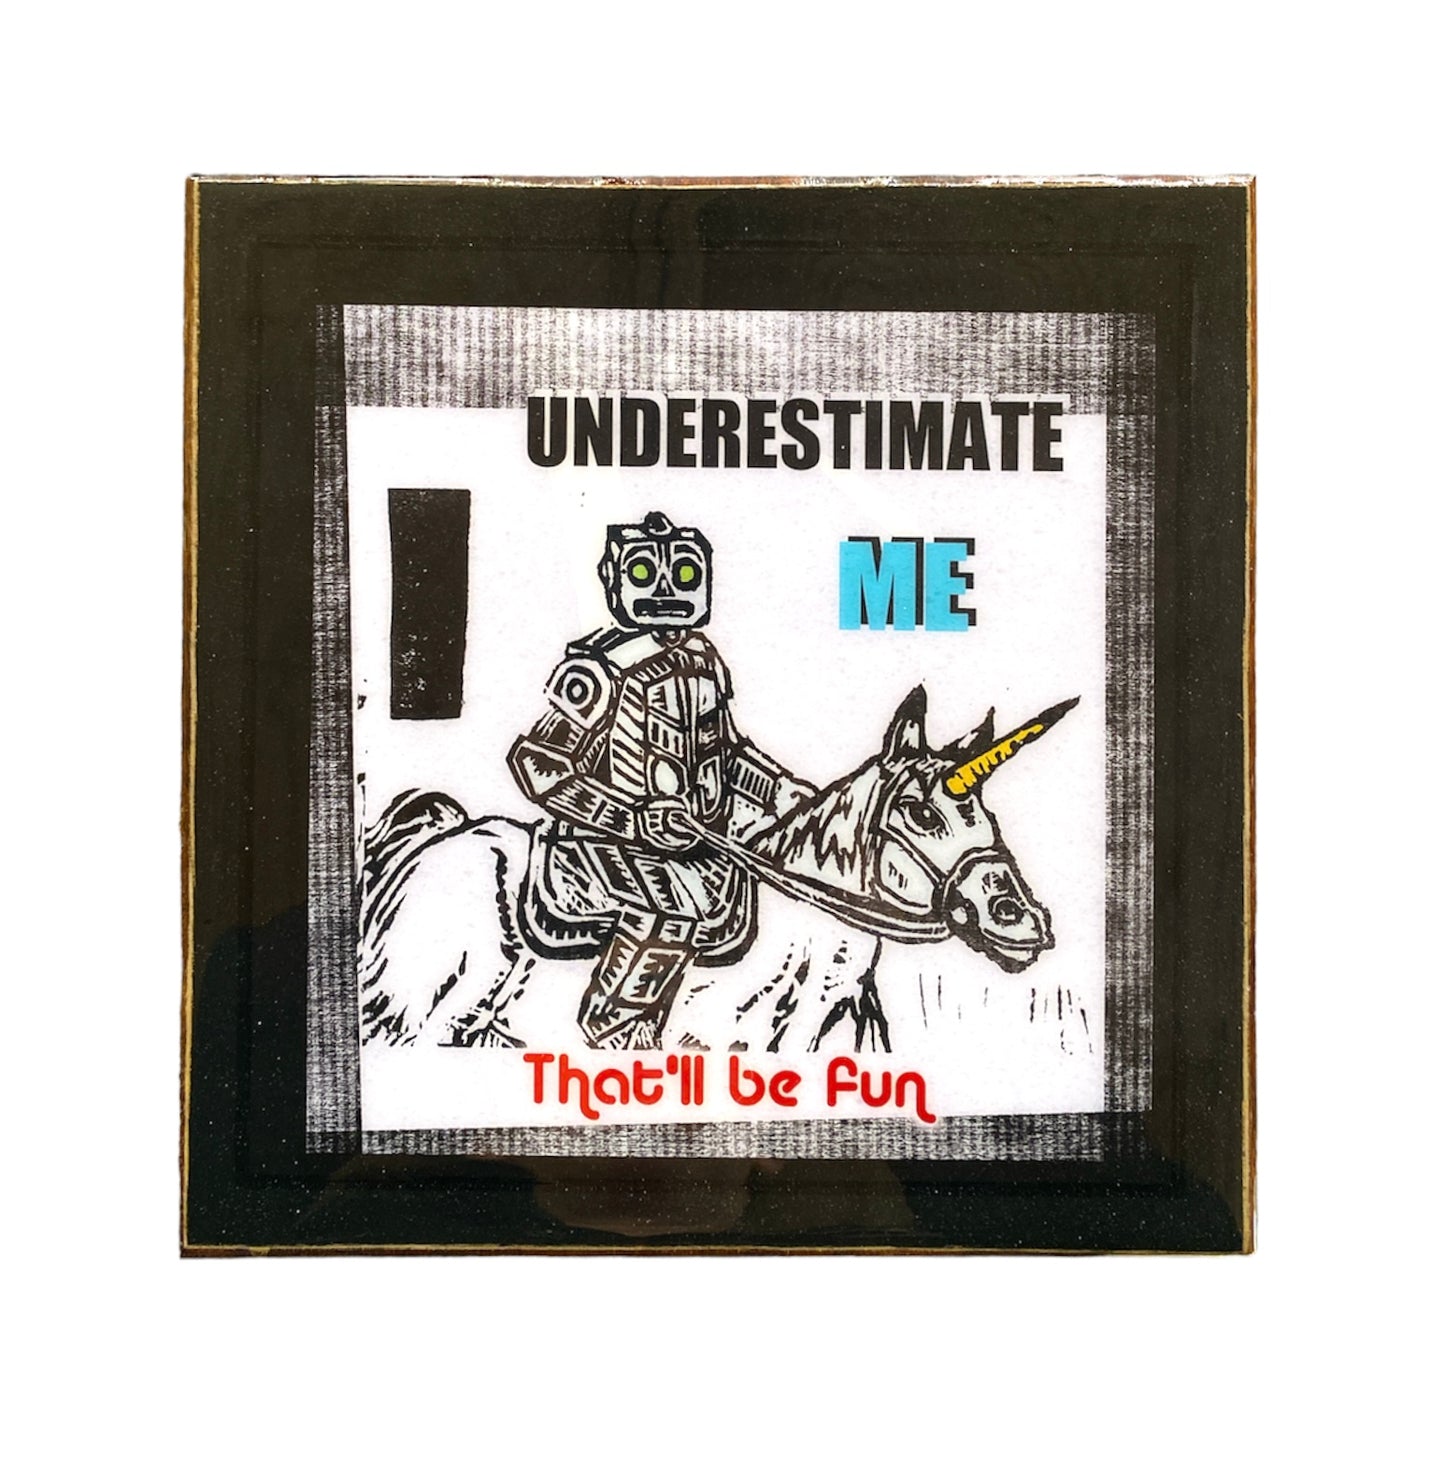 Underestimate Me (9x9)